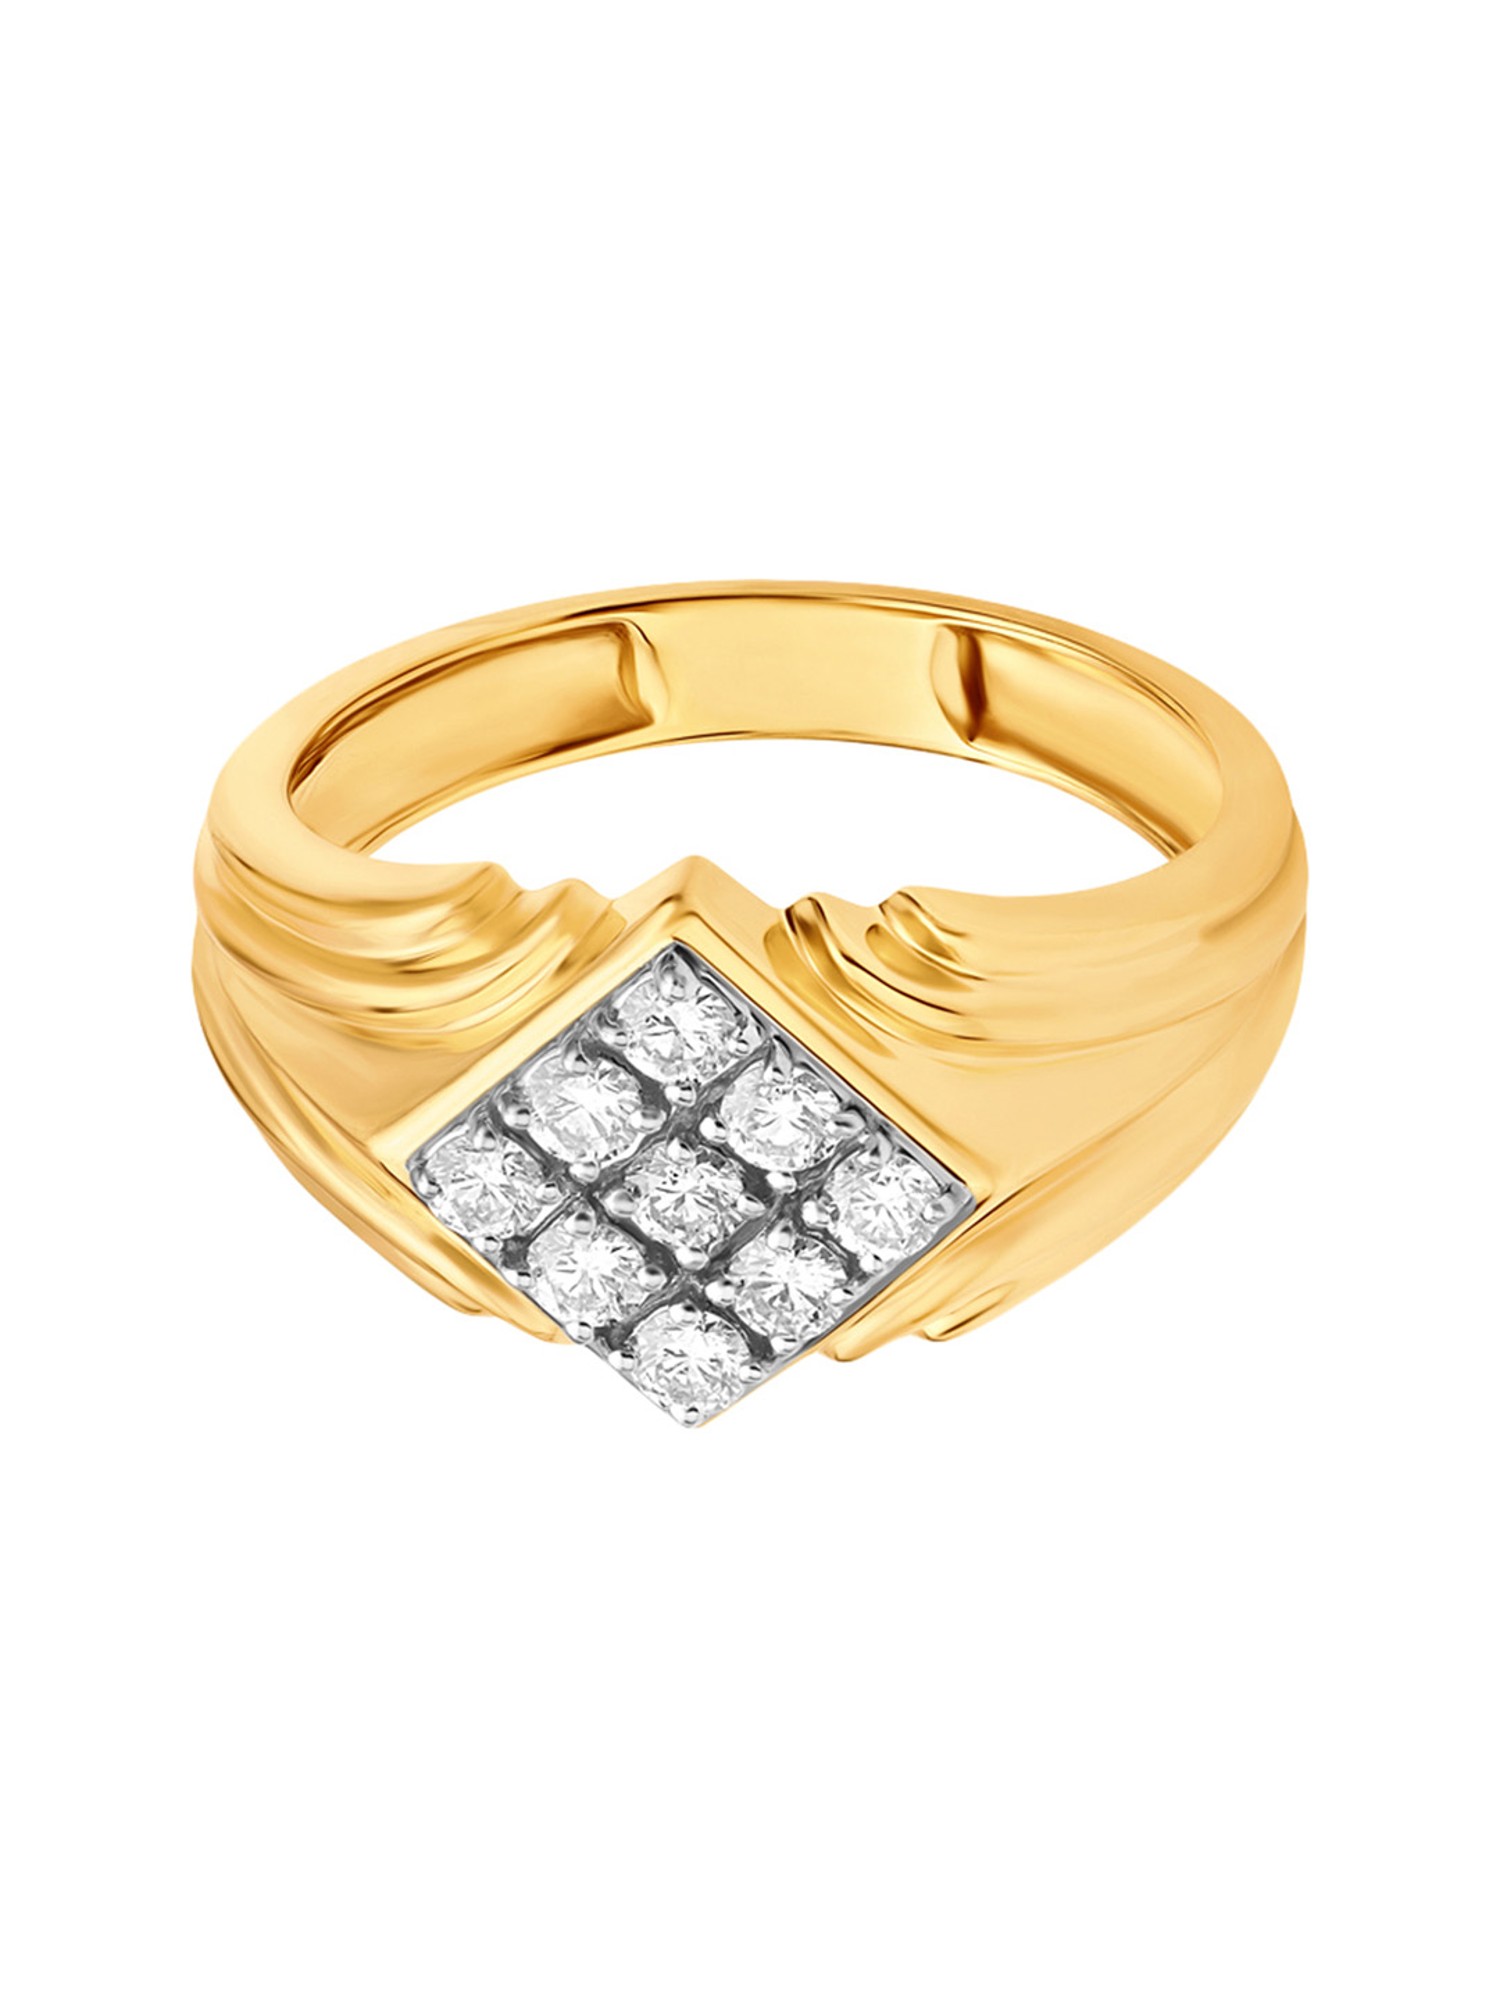 Striking Gold Ring for Men